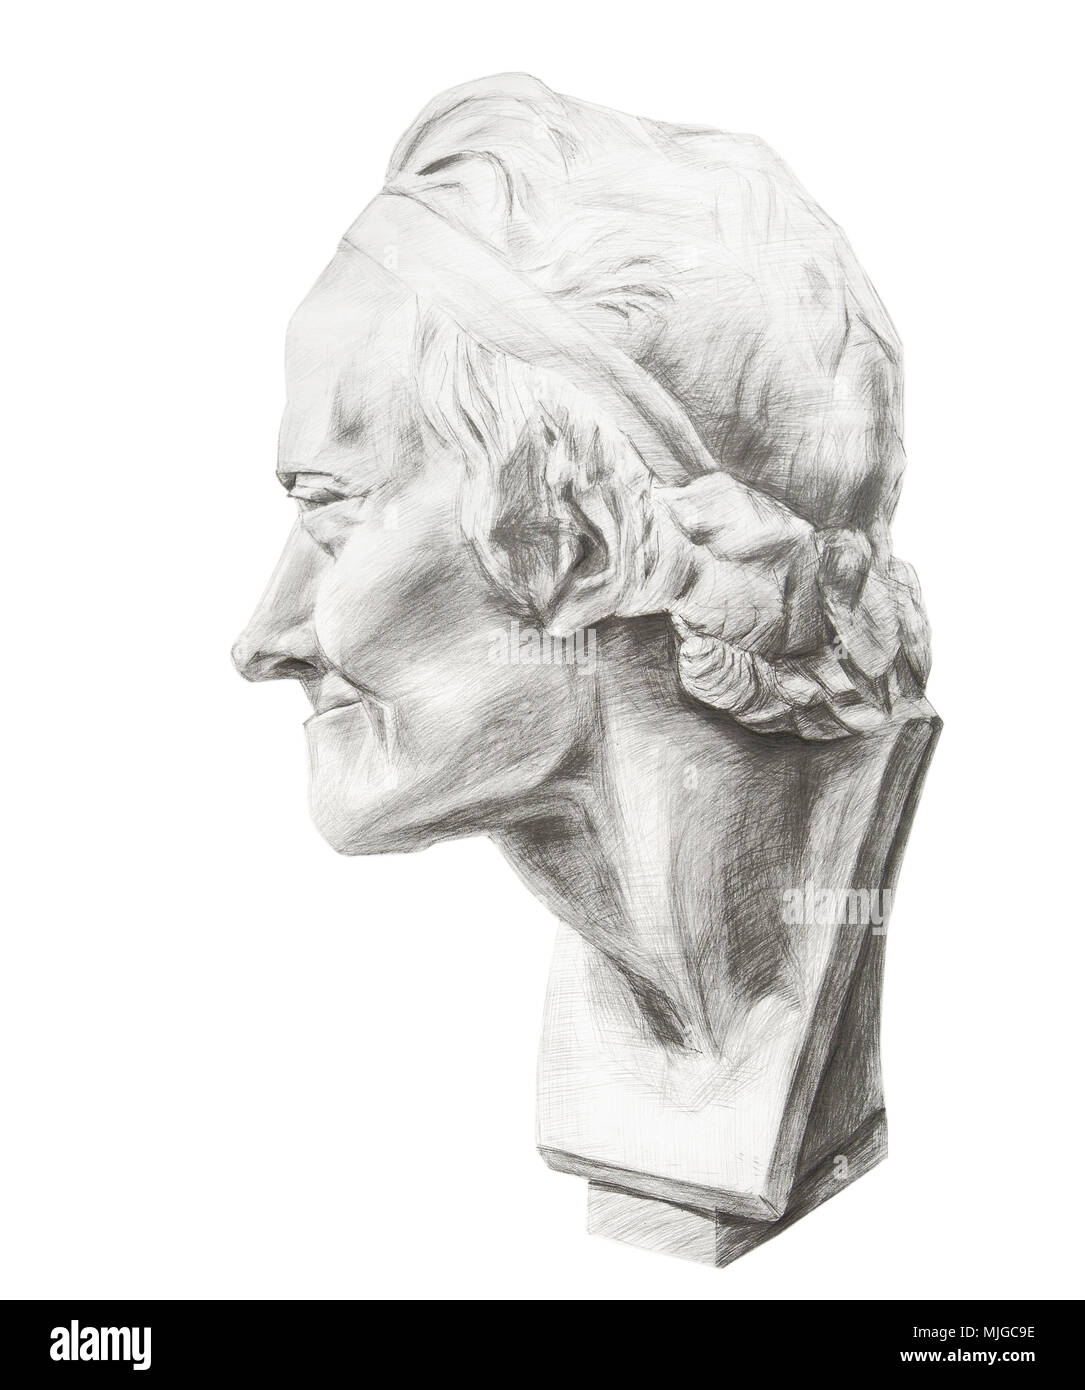 Zeichnung von Voltaires Gips Kopf. Kopf von Voltaire im Profil. Gips Skulptur des Philosophen Voltaire Stockfoto